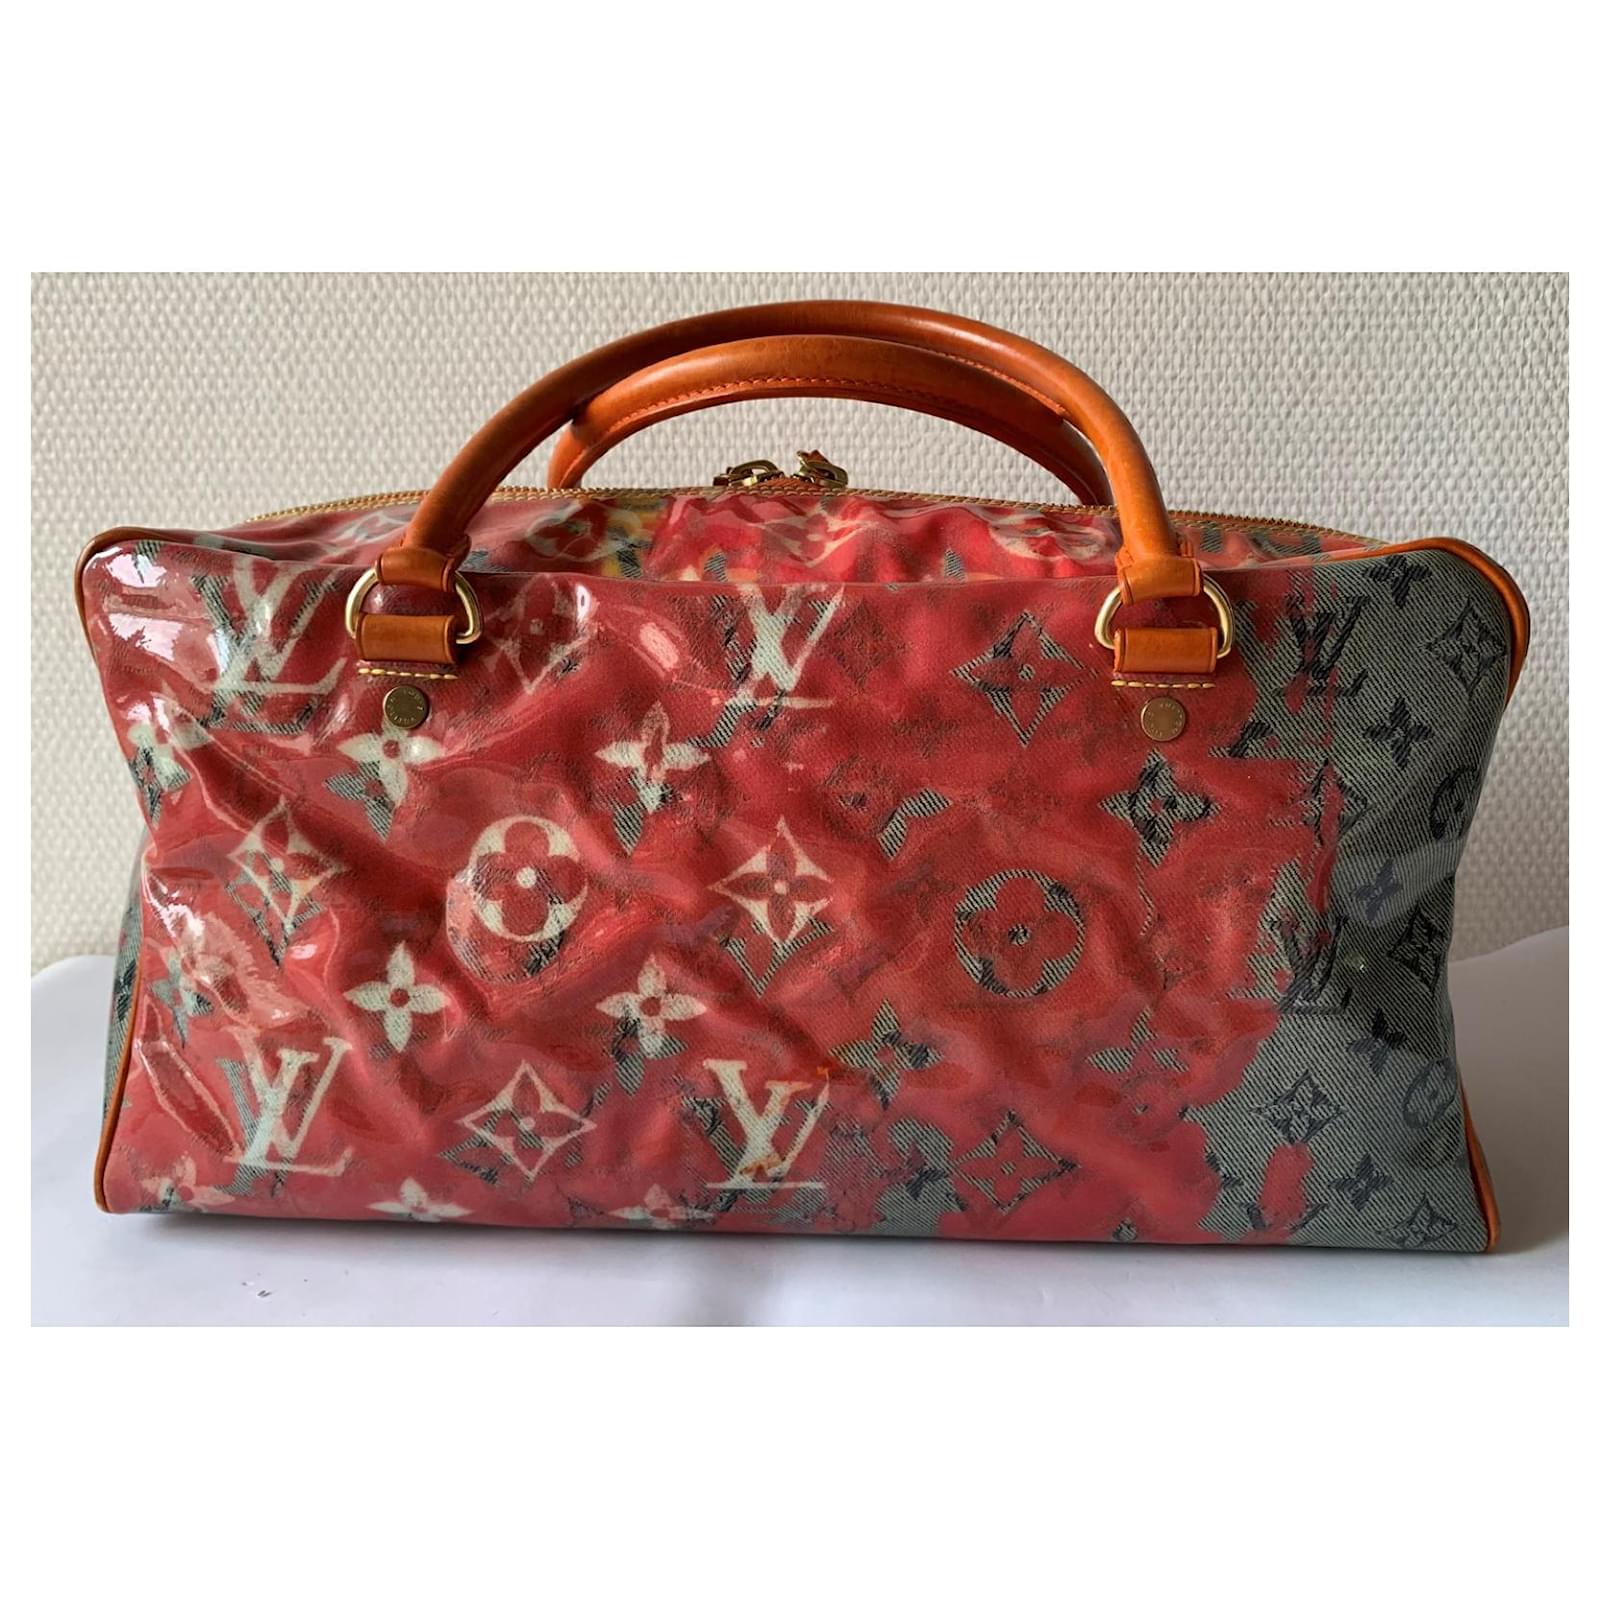 Louis Vuitton Travel Richard Prince Pink Denim Weekender Pm Bag